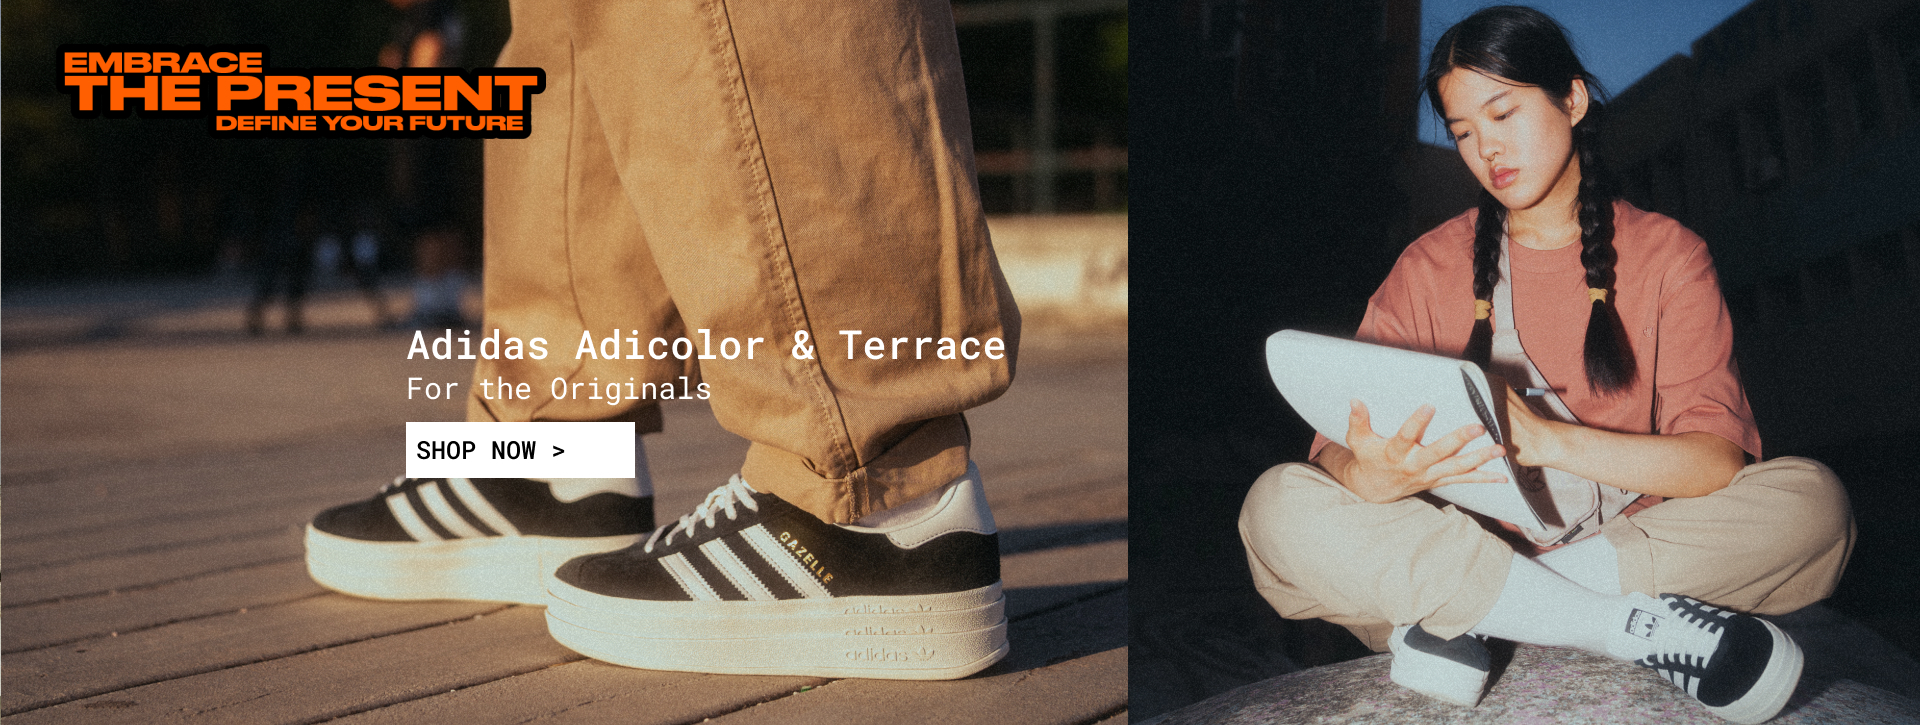 Adidas Adicolor & Terrace 